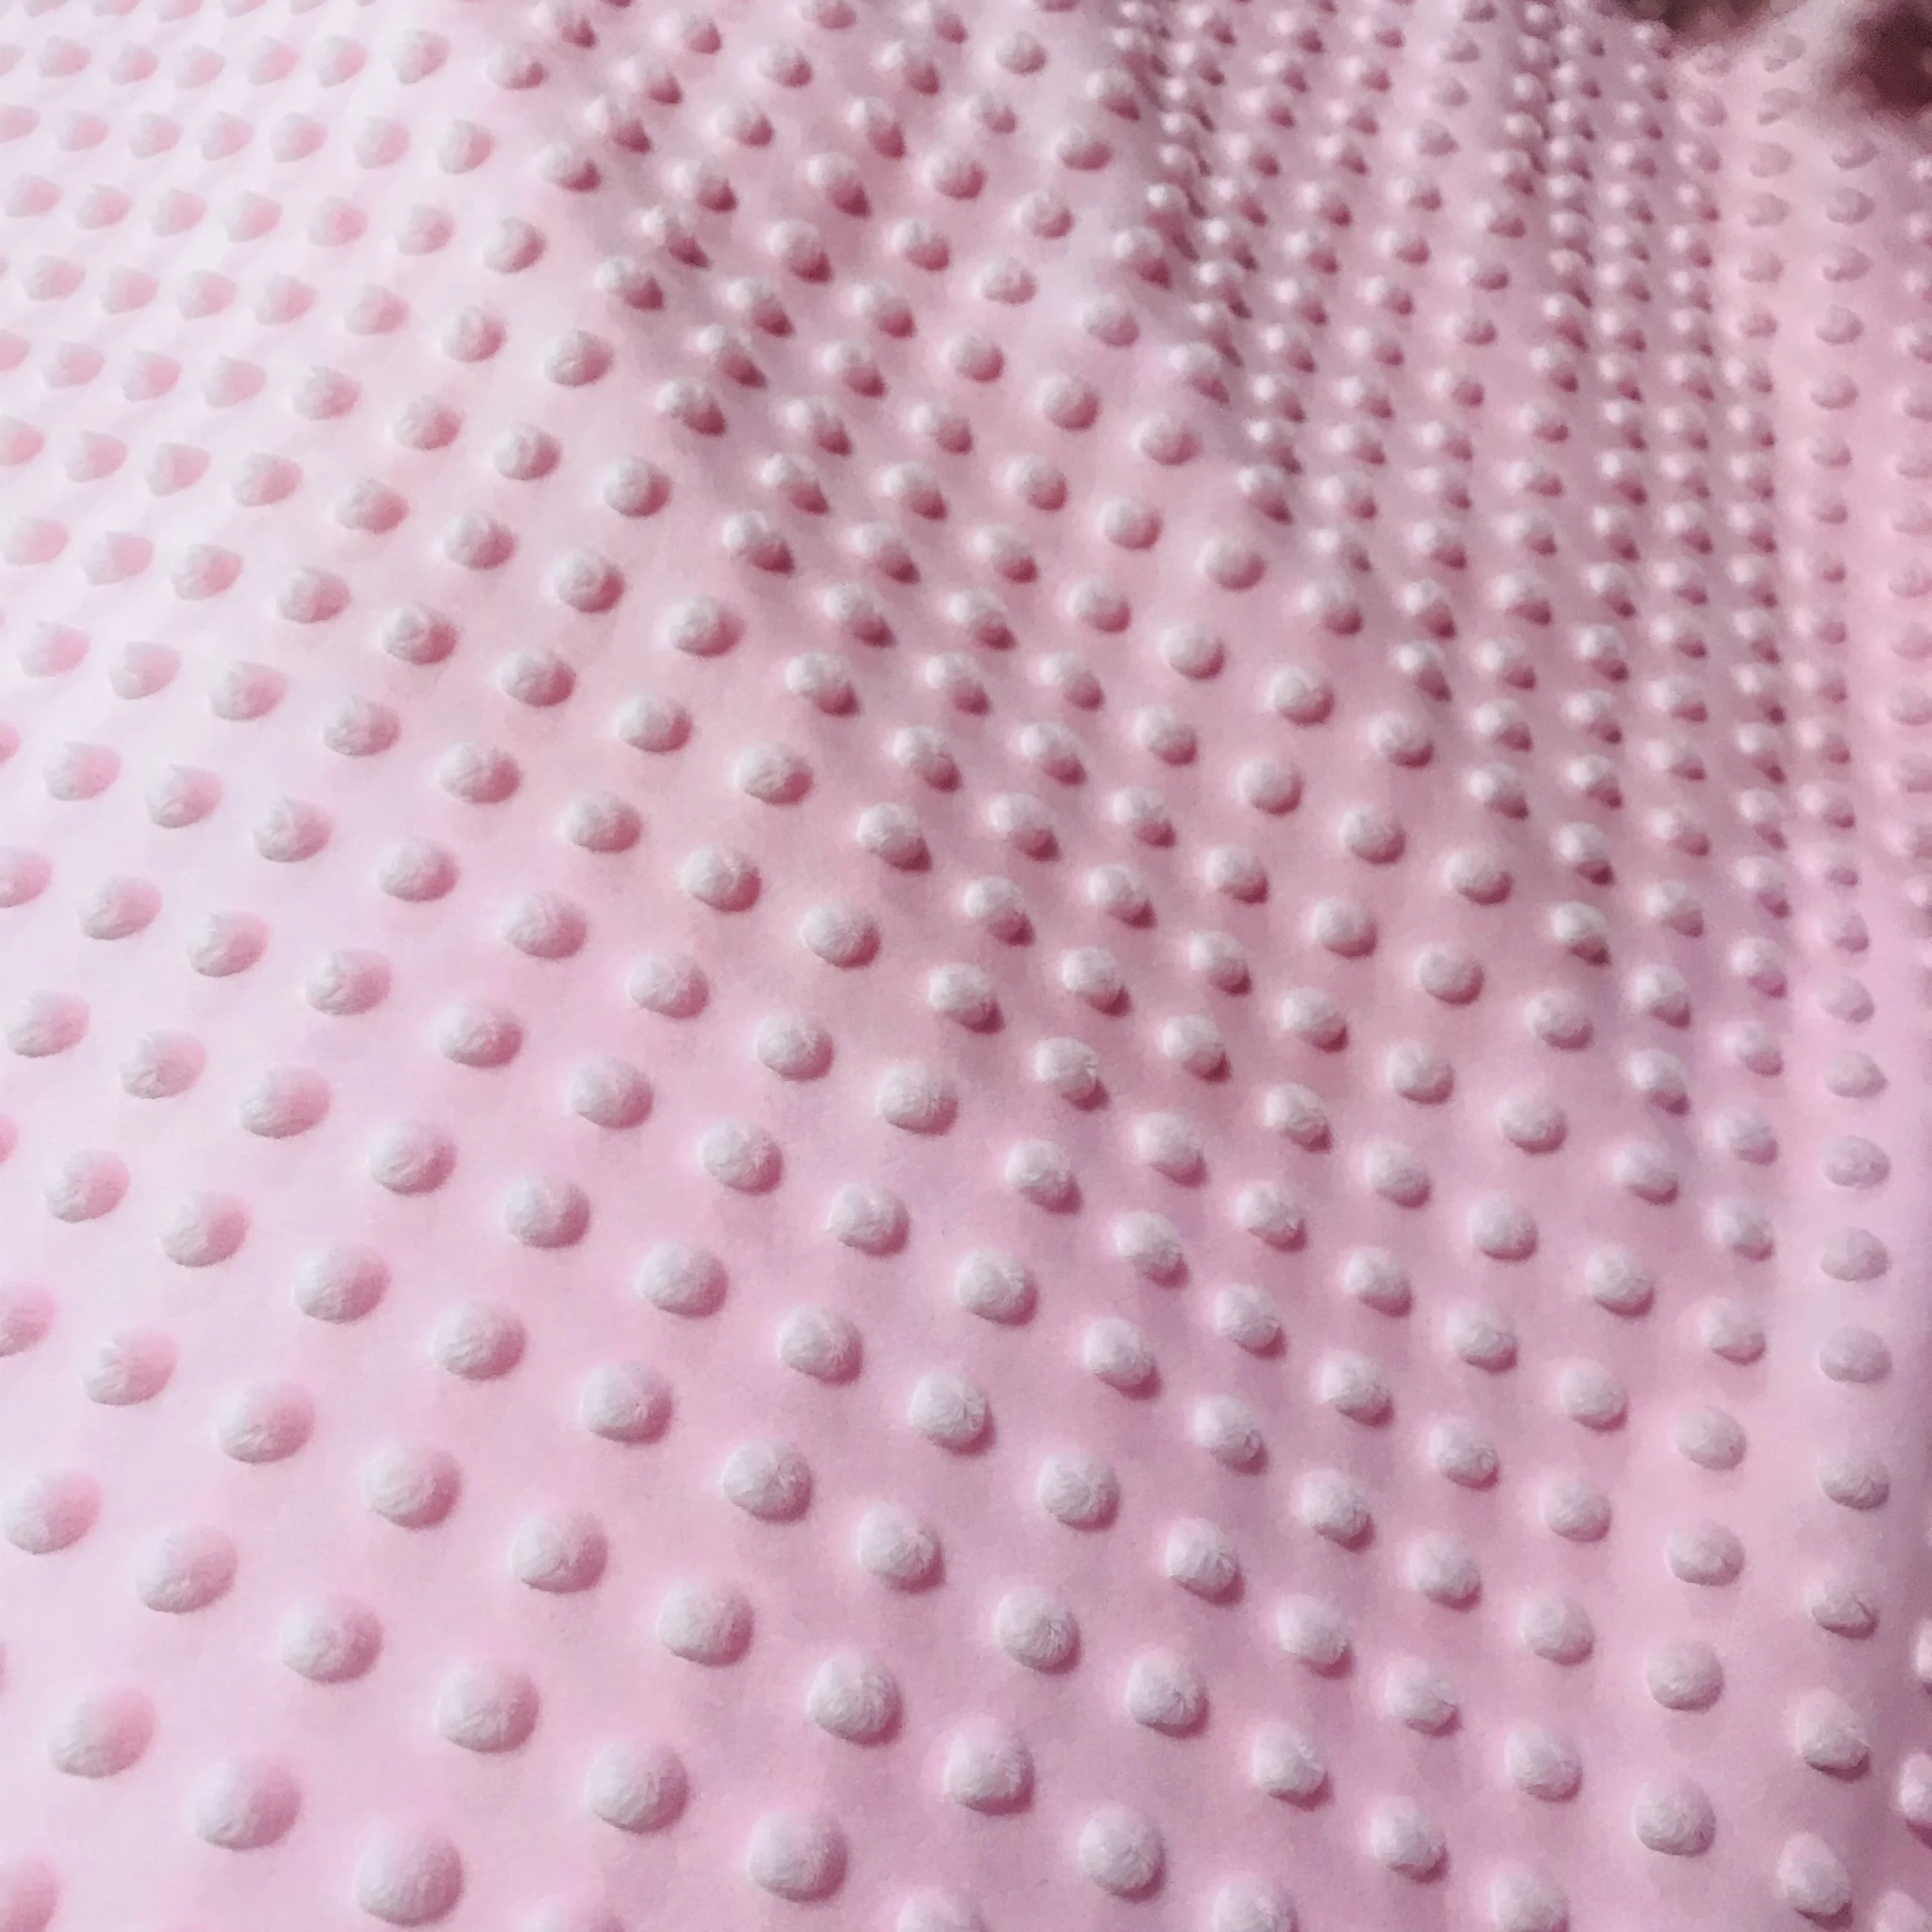 Polyester New Design High Quality Wholesale Custom Super Soft Velvet For Baby Blanket Toys clothes 3D Minky Dot Velvet Fabric